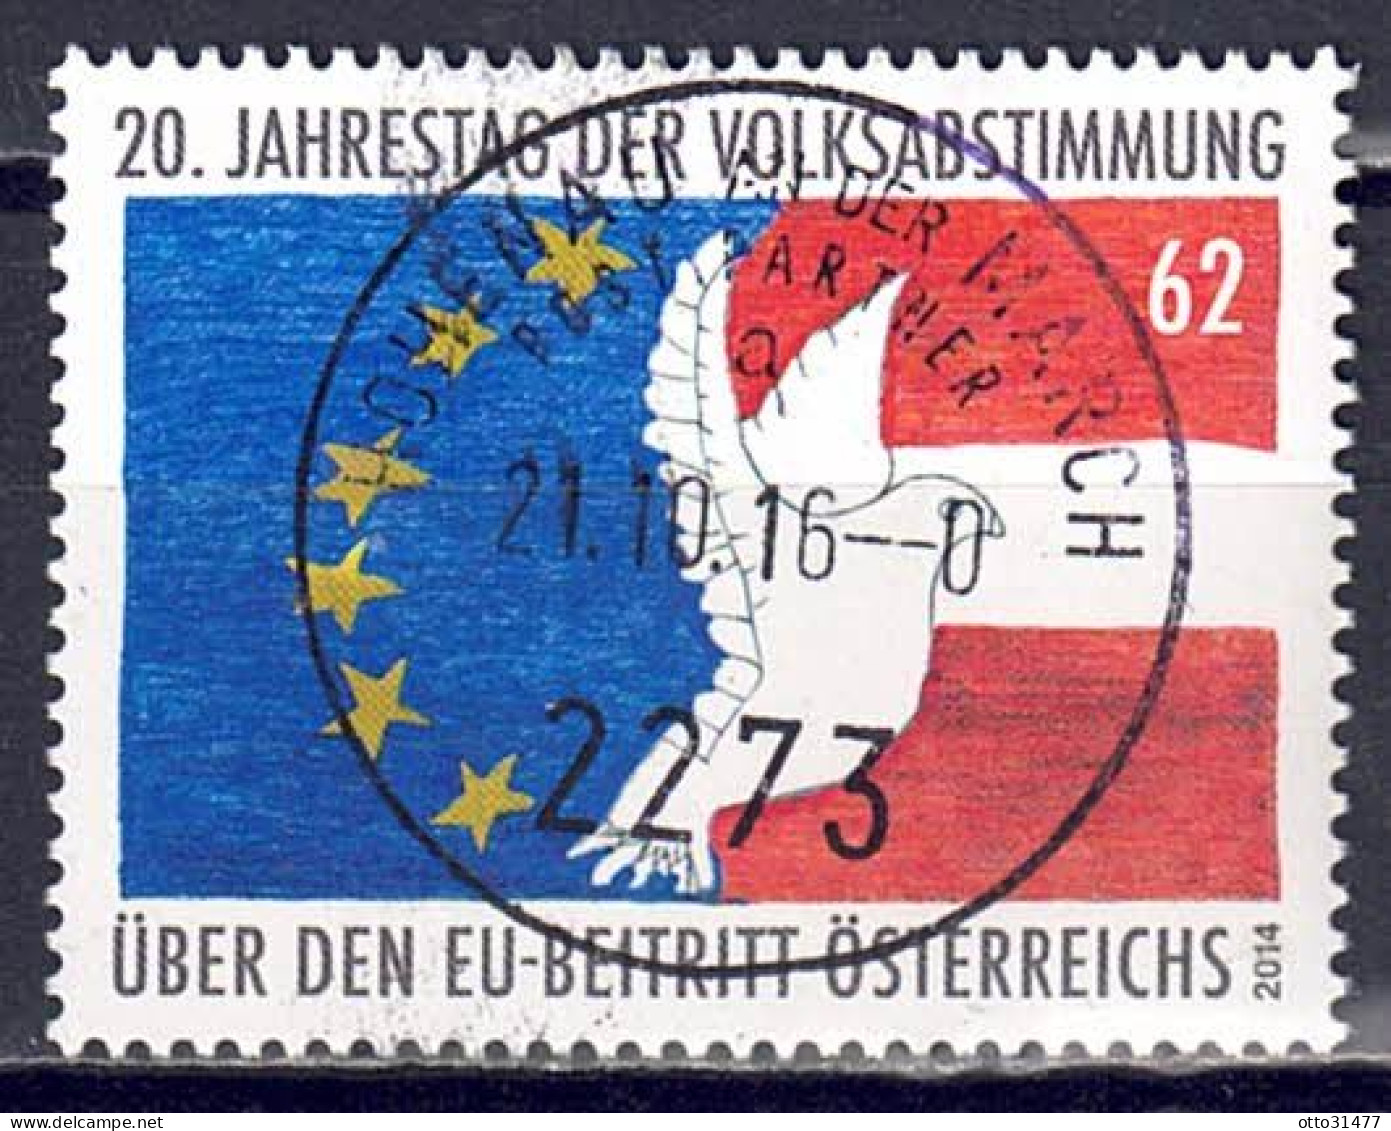 Österreich 2014 - EU-Beitritt, MiNr. 3145, Gestempelt / Used - Used Stamps